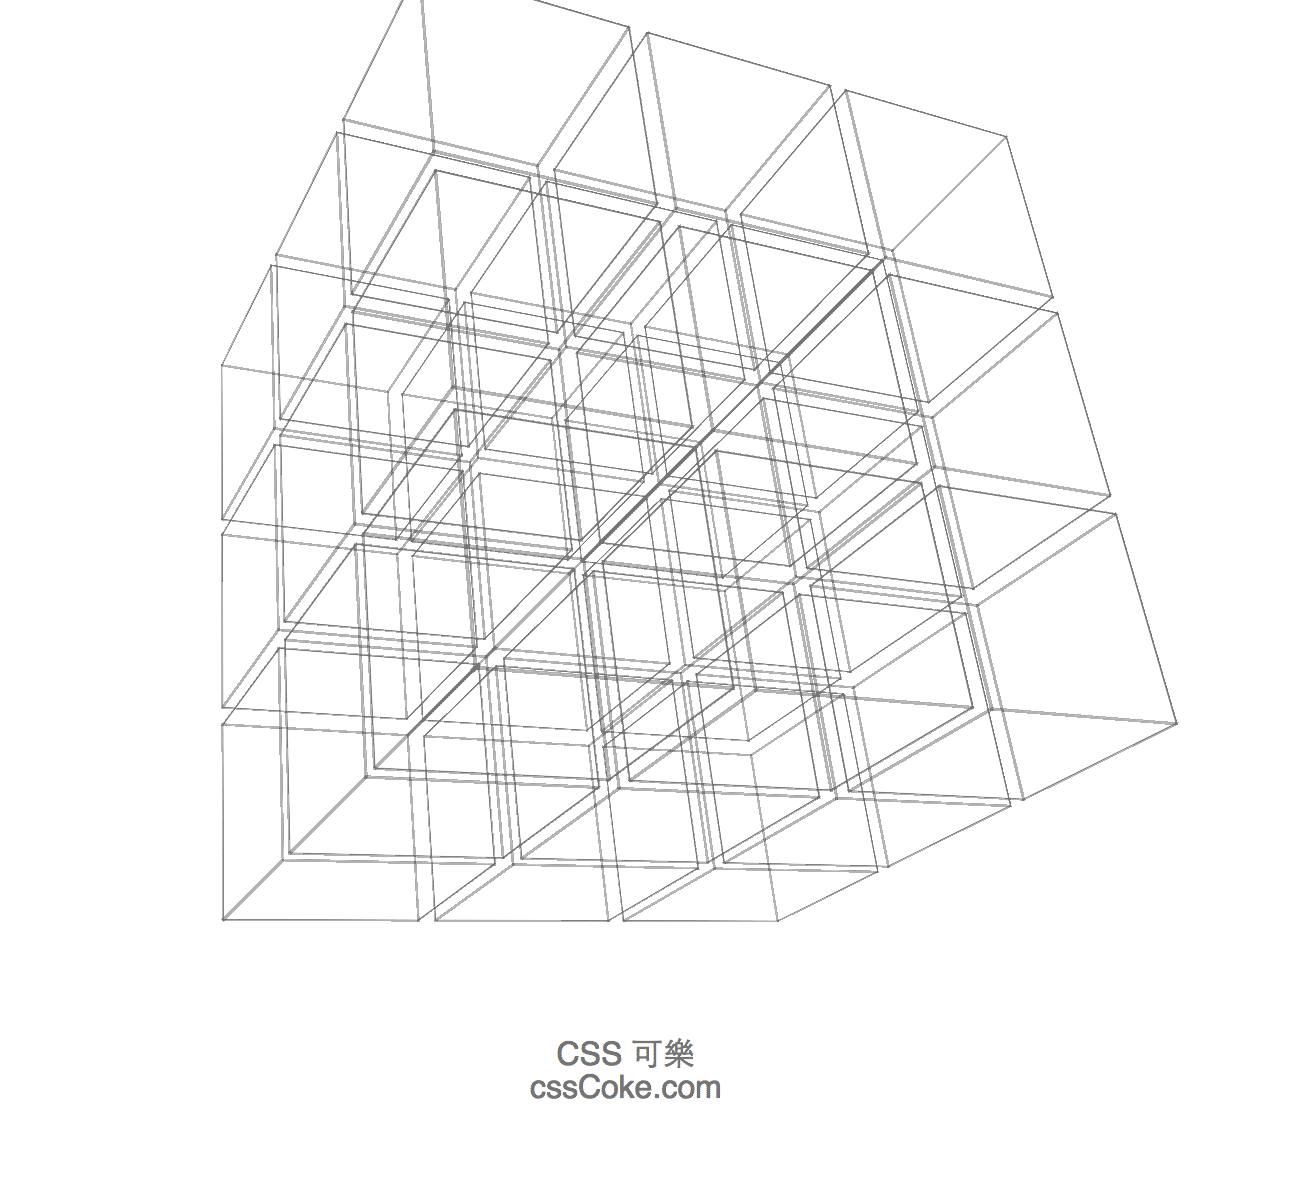 CSS3 3D Pocket Rubik Cube